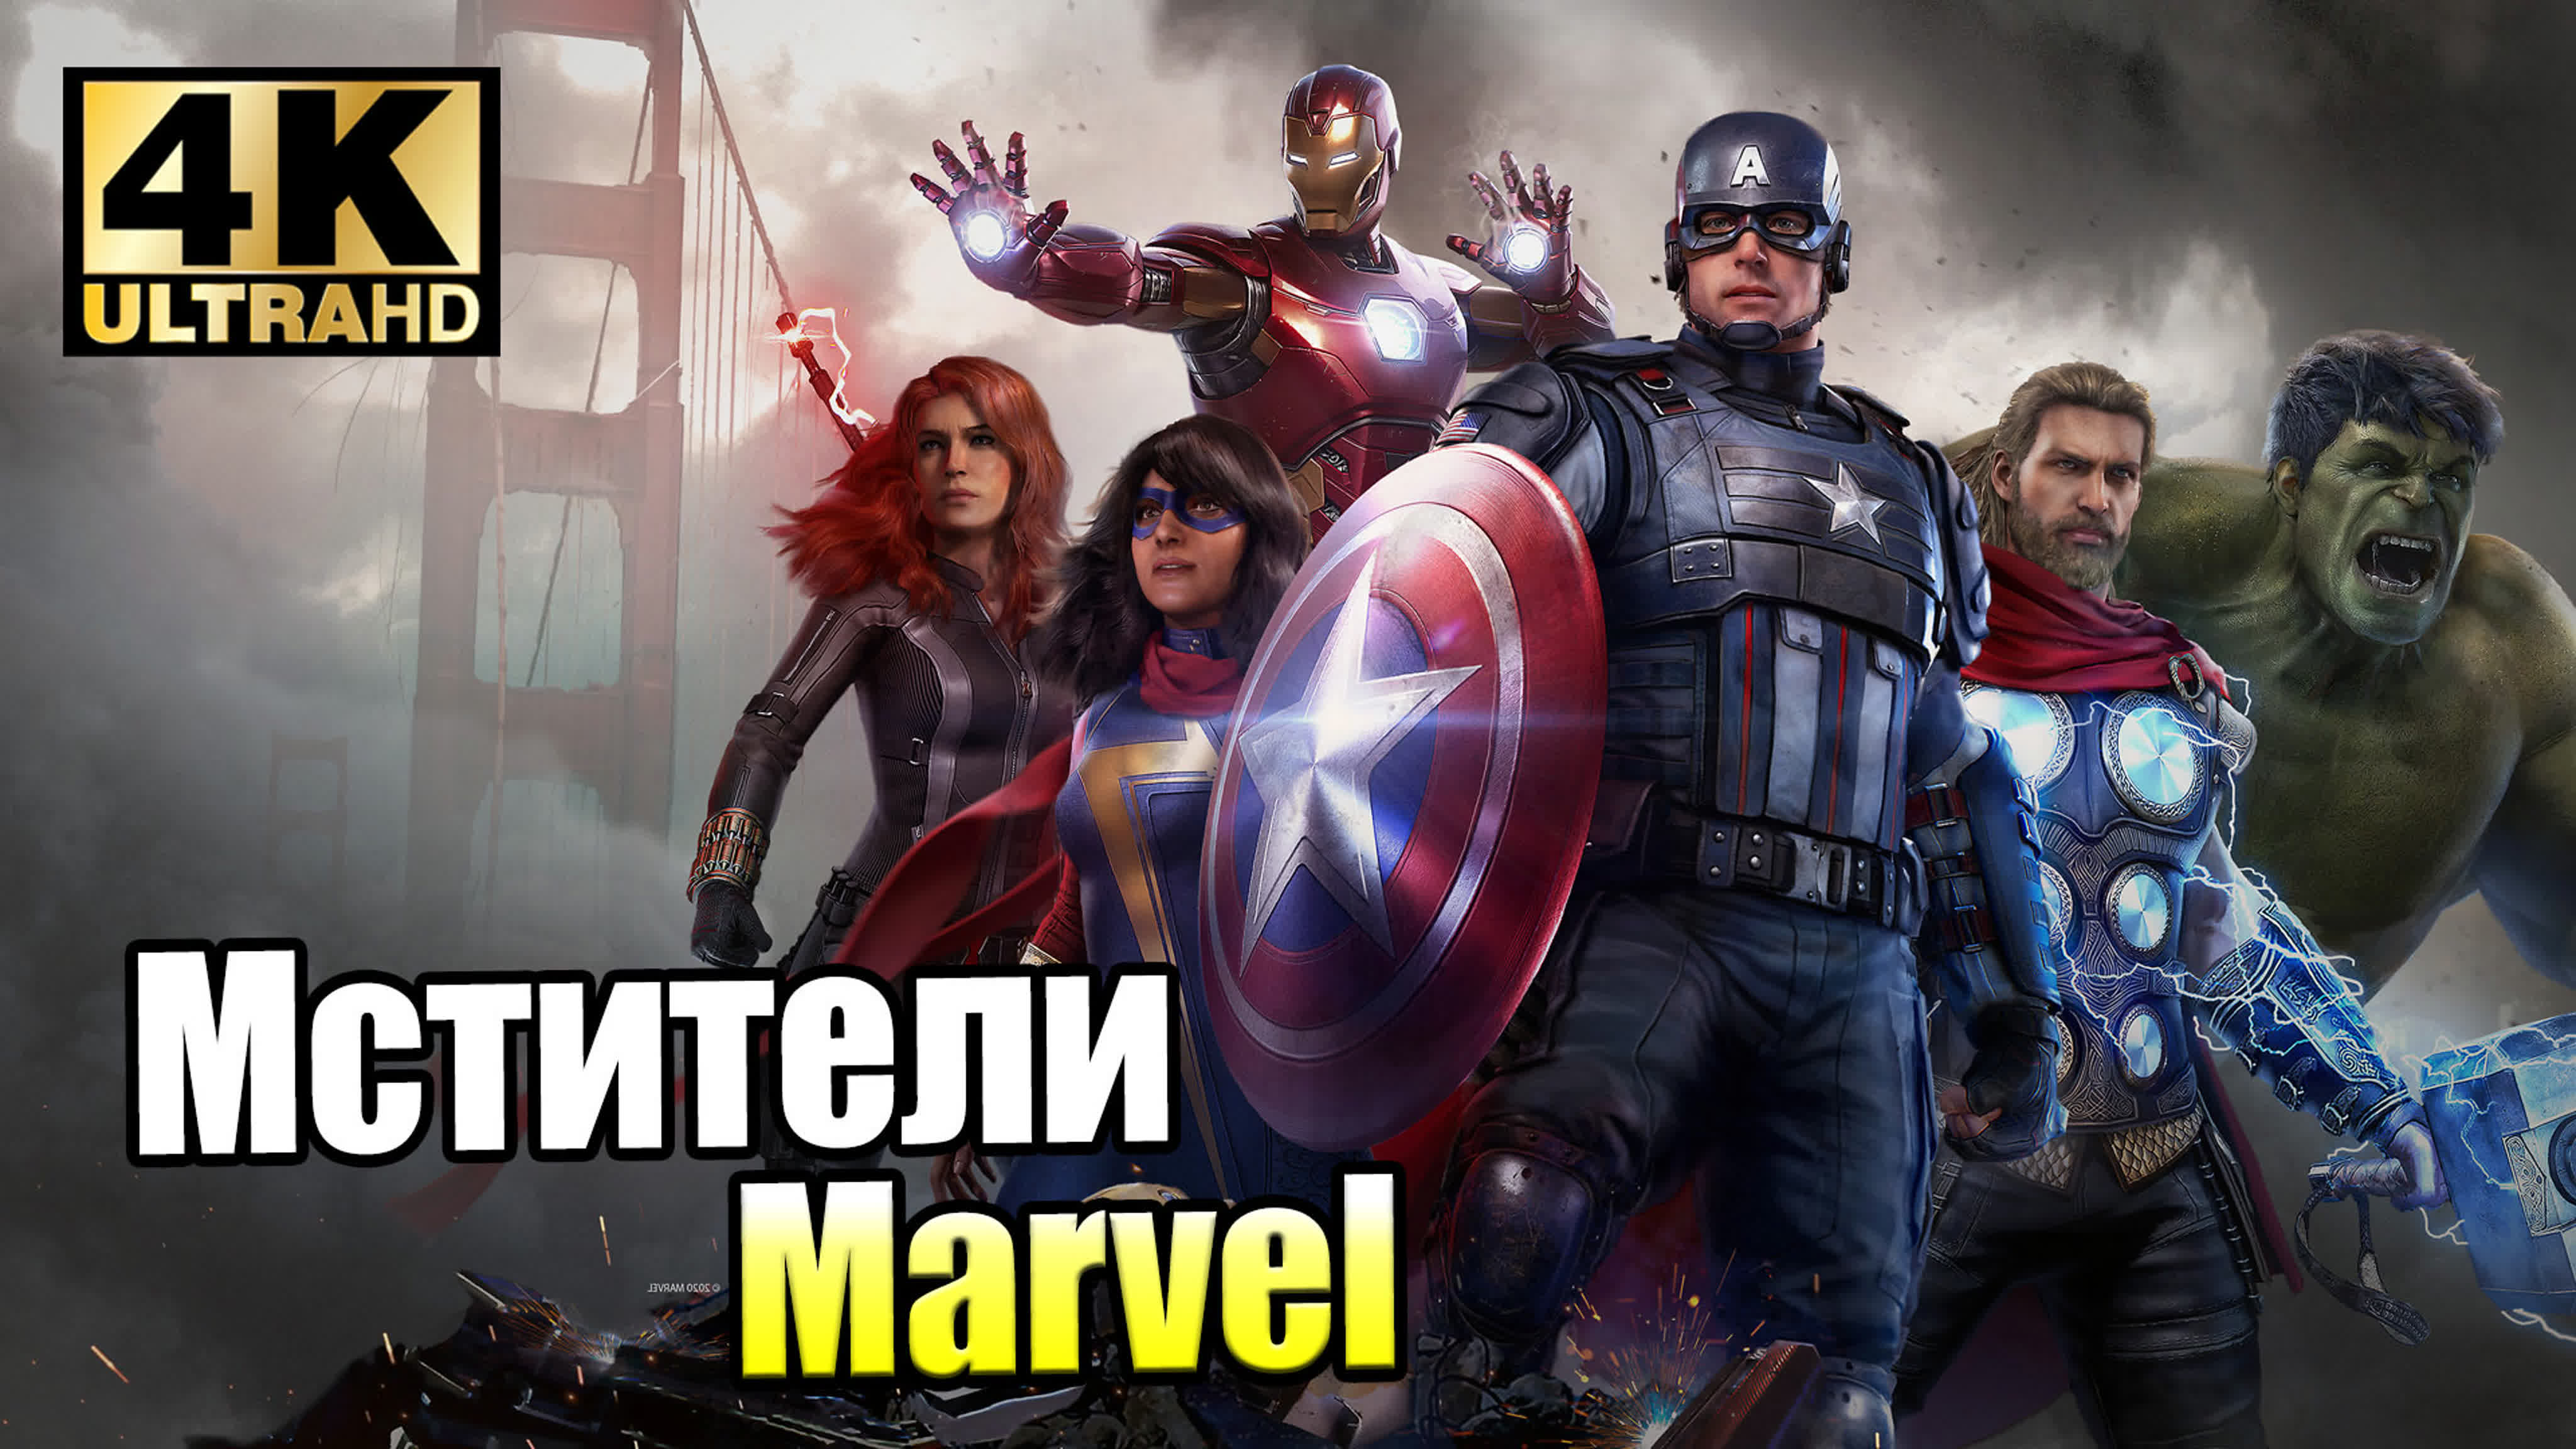 Marvel's Avengers (PC) 4K